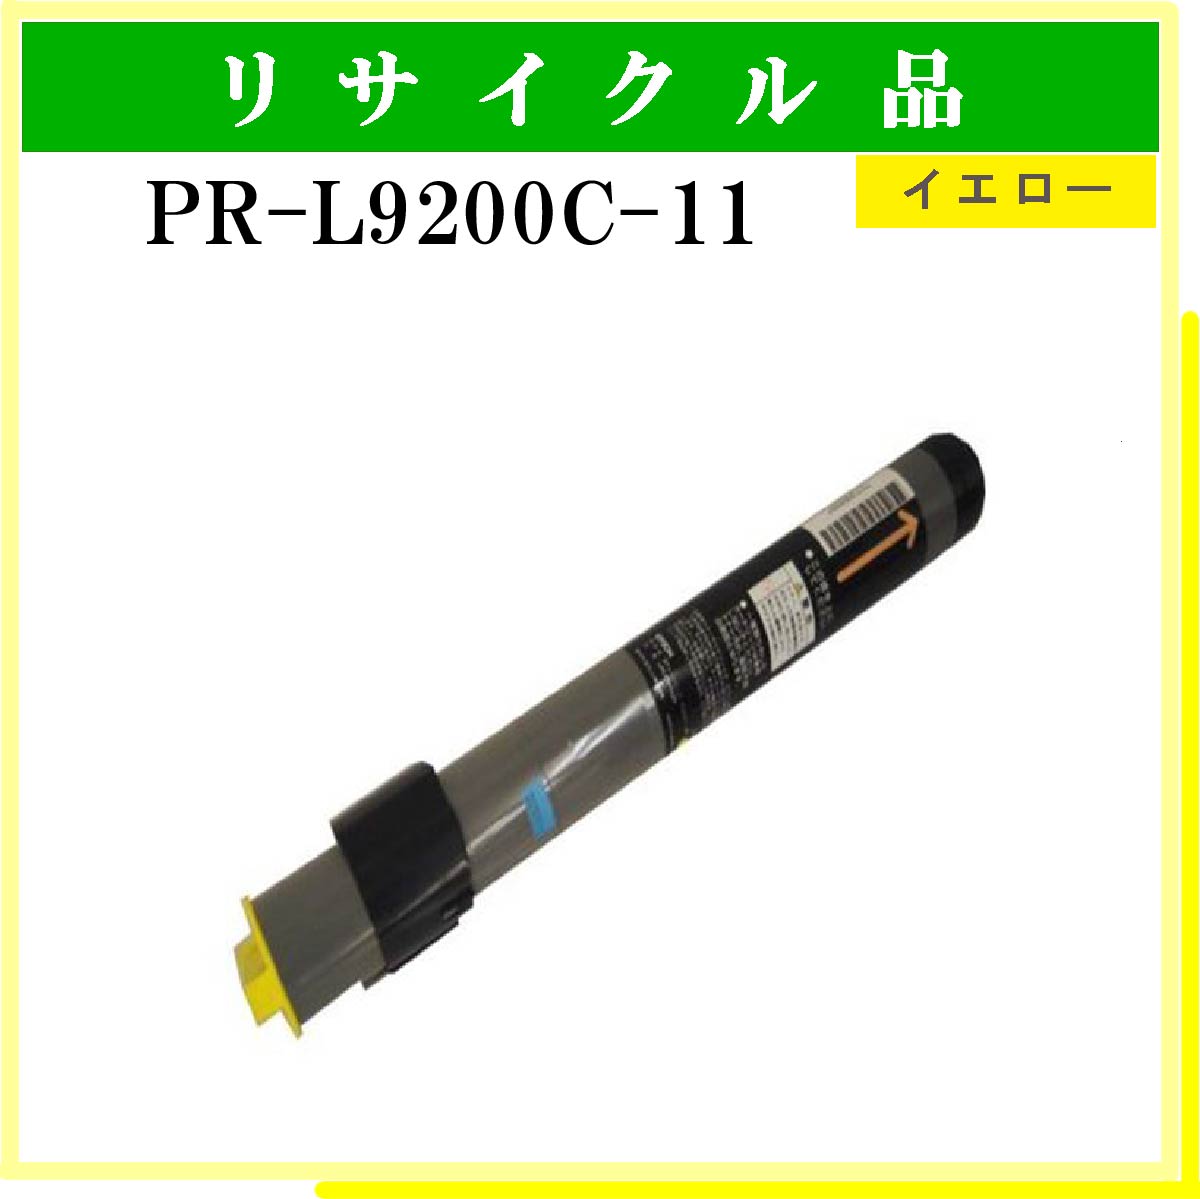 PR-L9200C-11